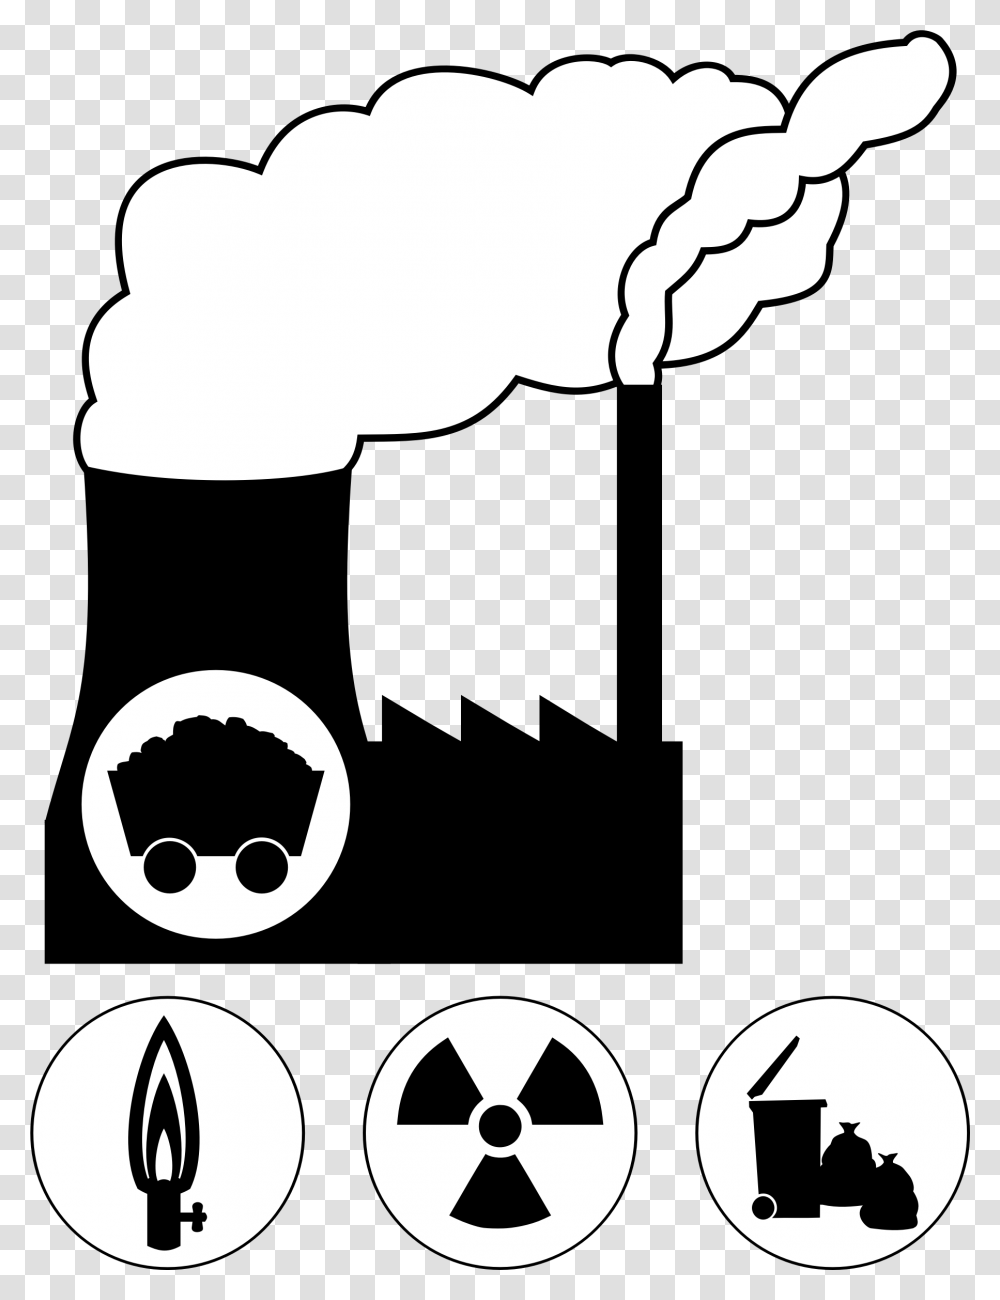 Clip Art Coal Power Plant Clipart, Stencil, Pillow Transparent Png